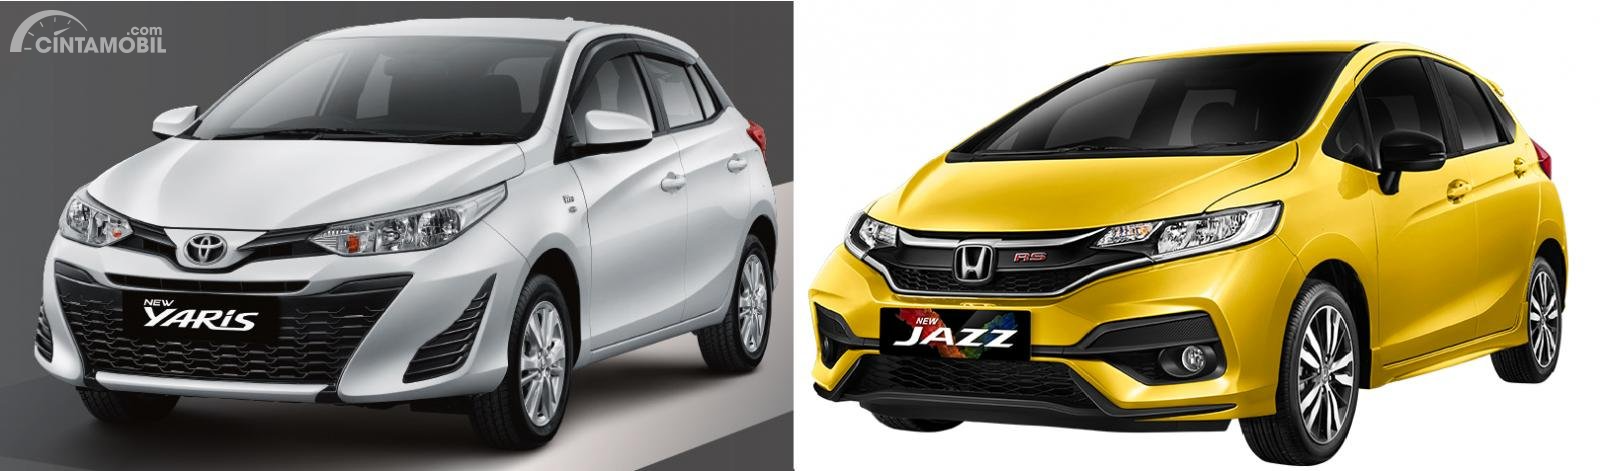 Gambar menunjukkan bandingkan antara Toyota Yaris vs Honda Jazz